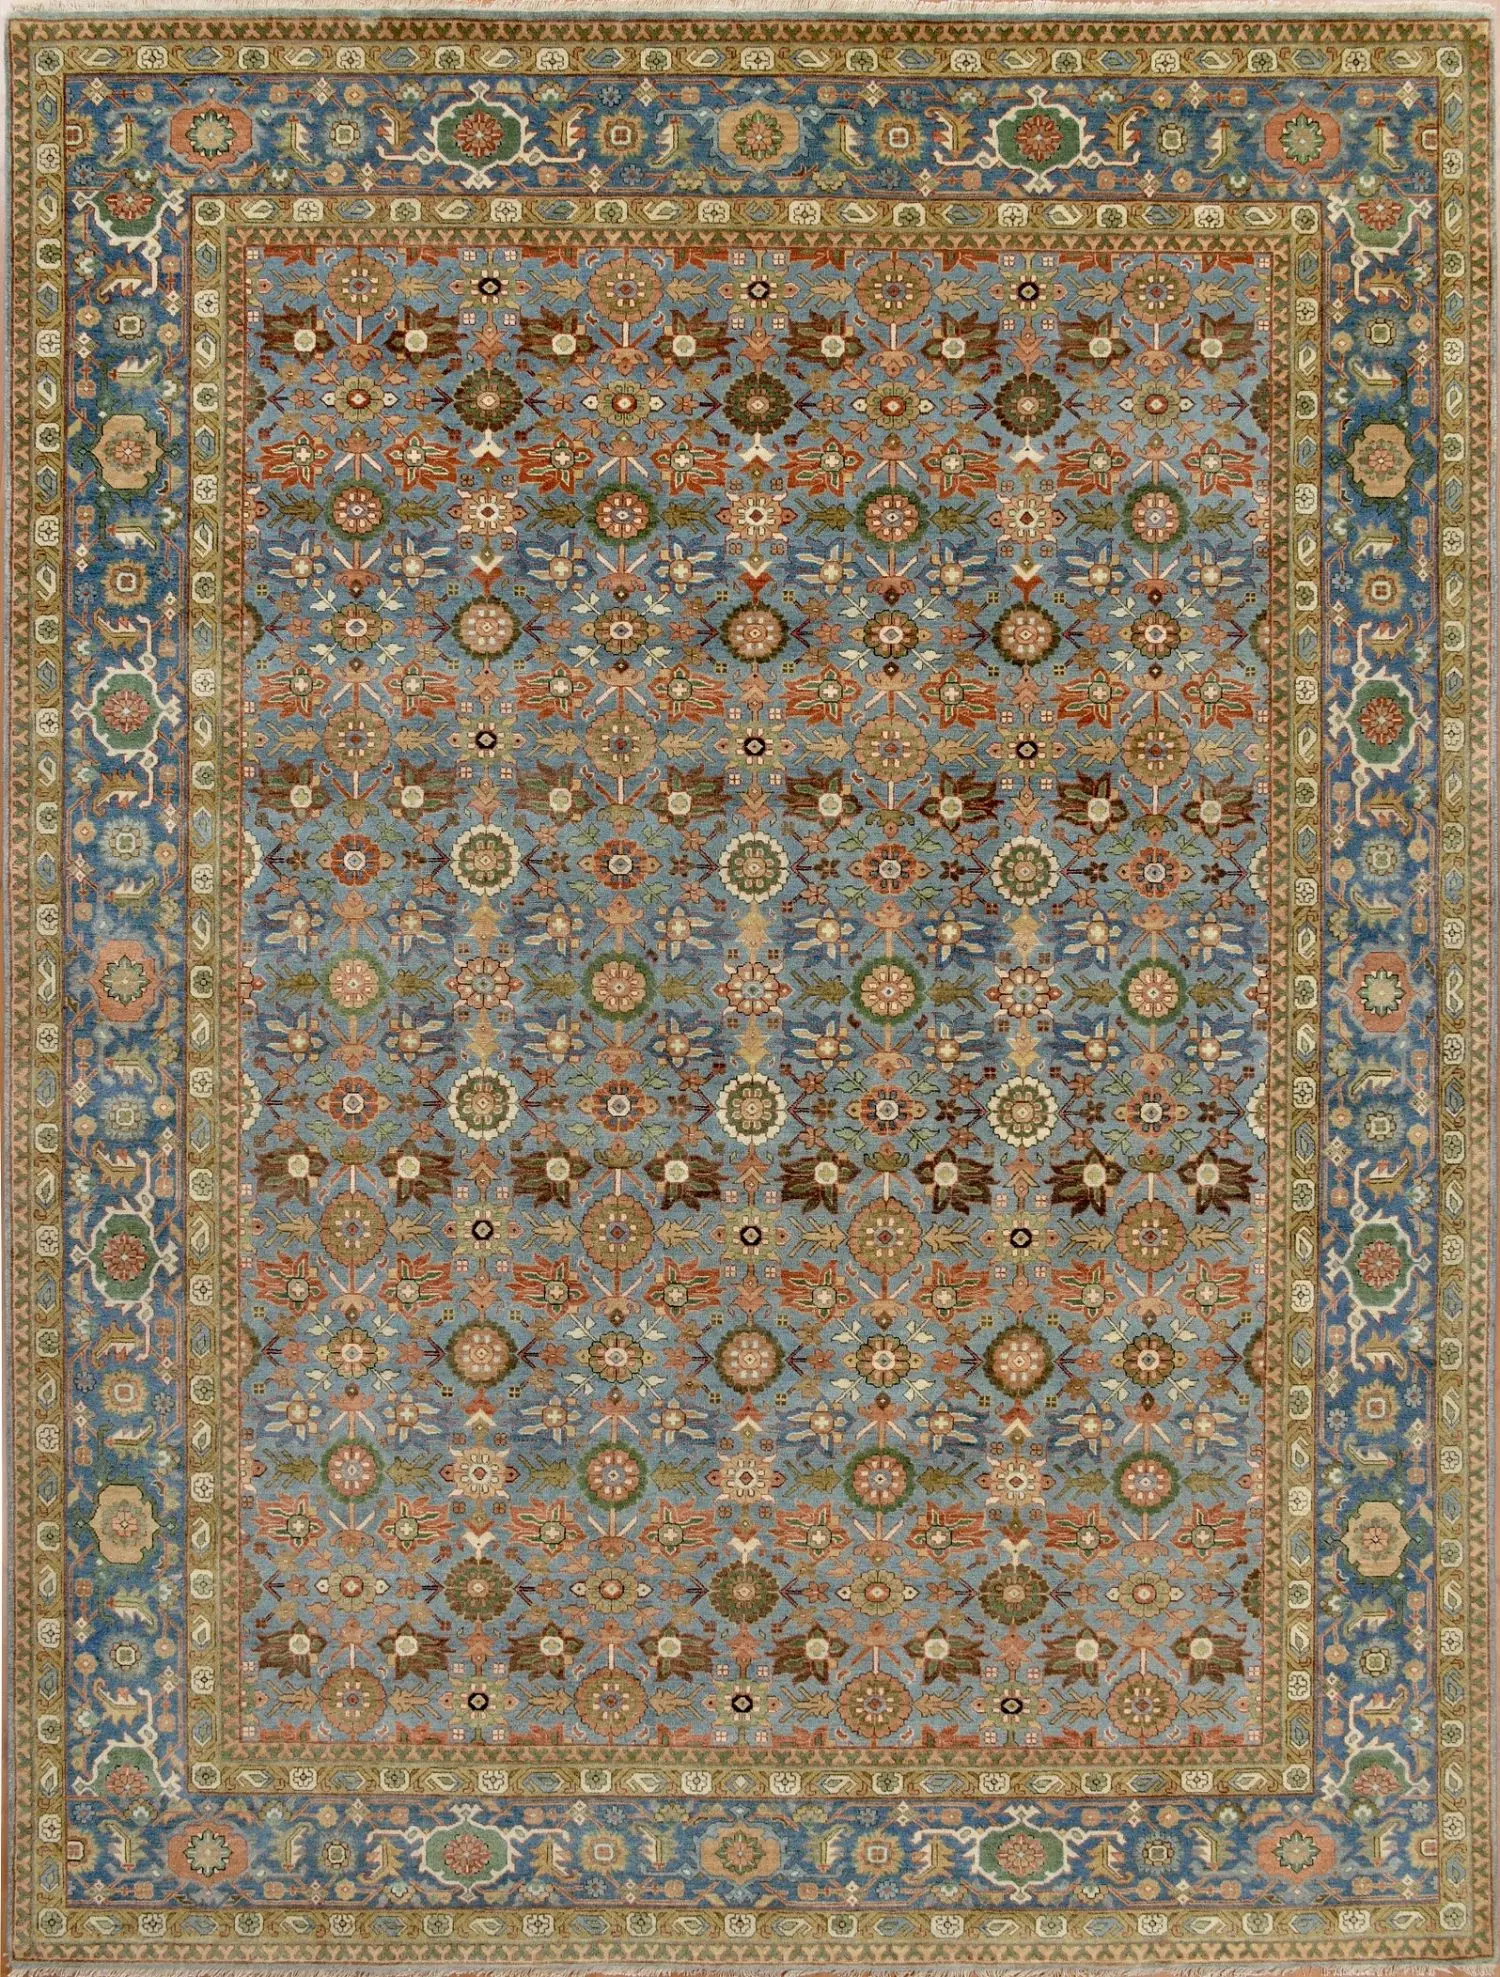 Bijar 8' 1" x 10' 1" Handmade Area rug